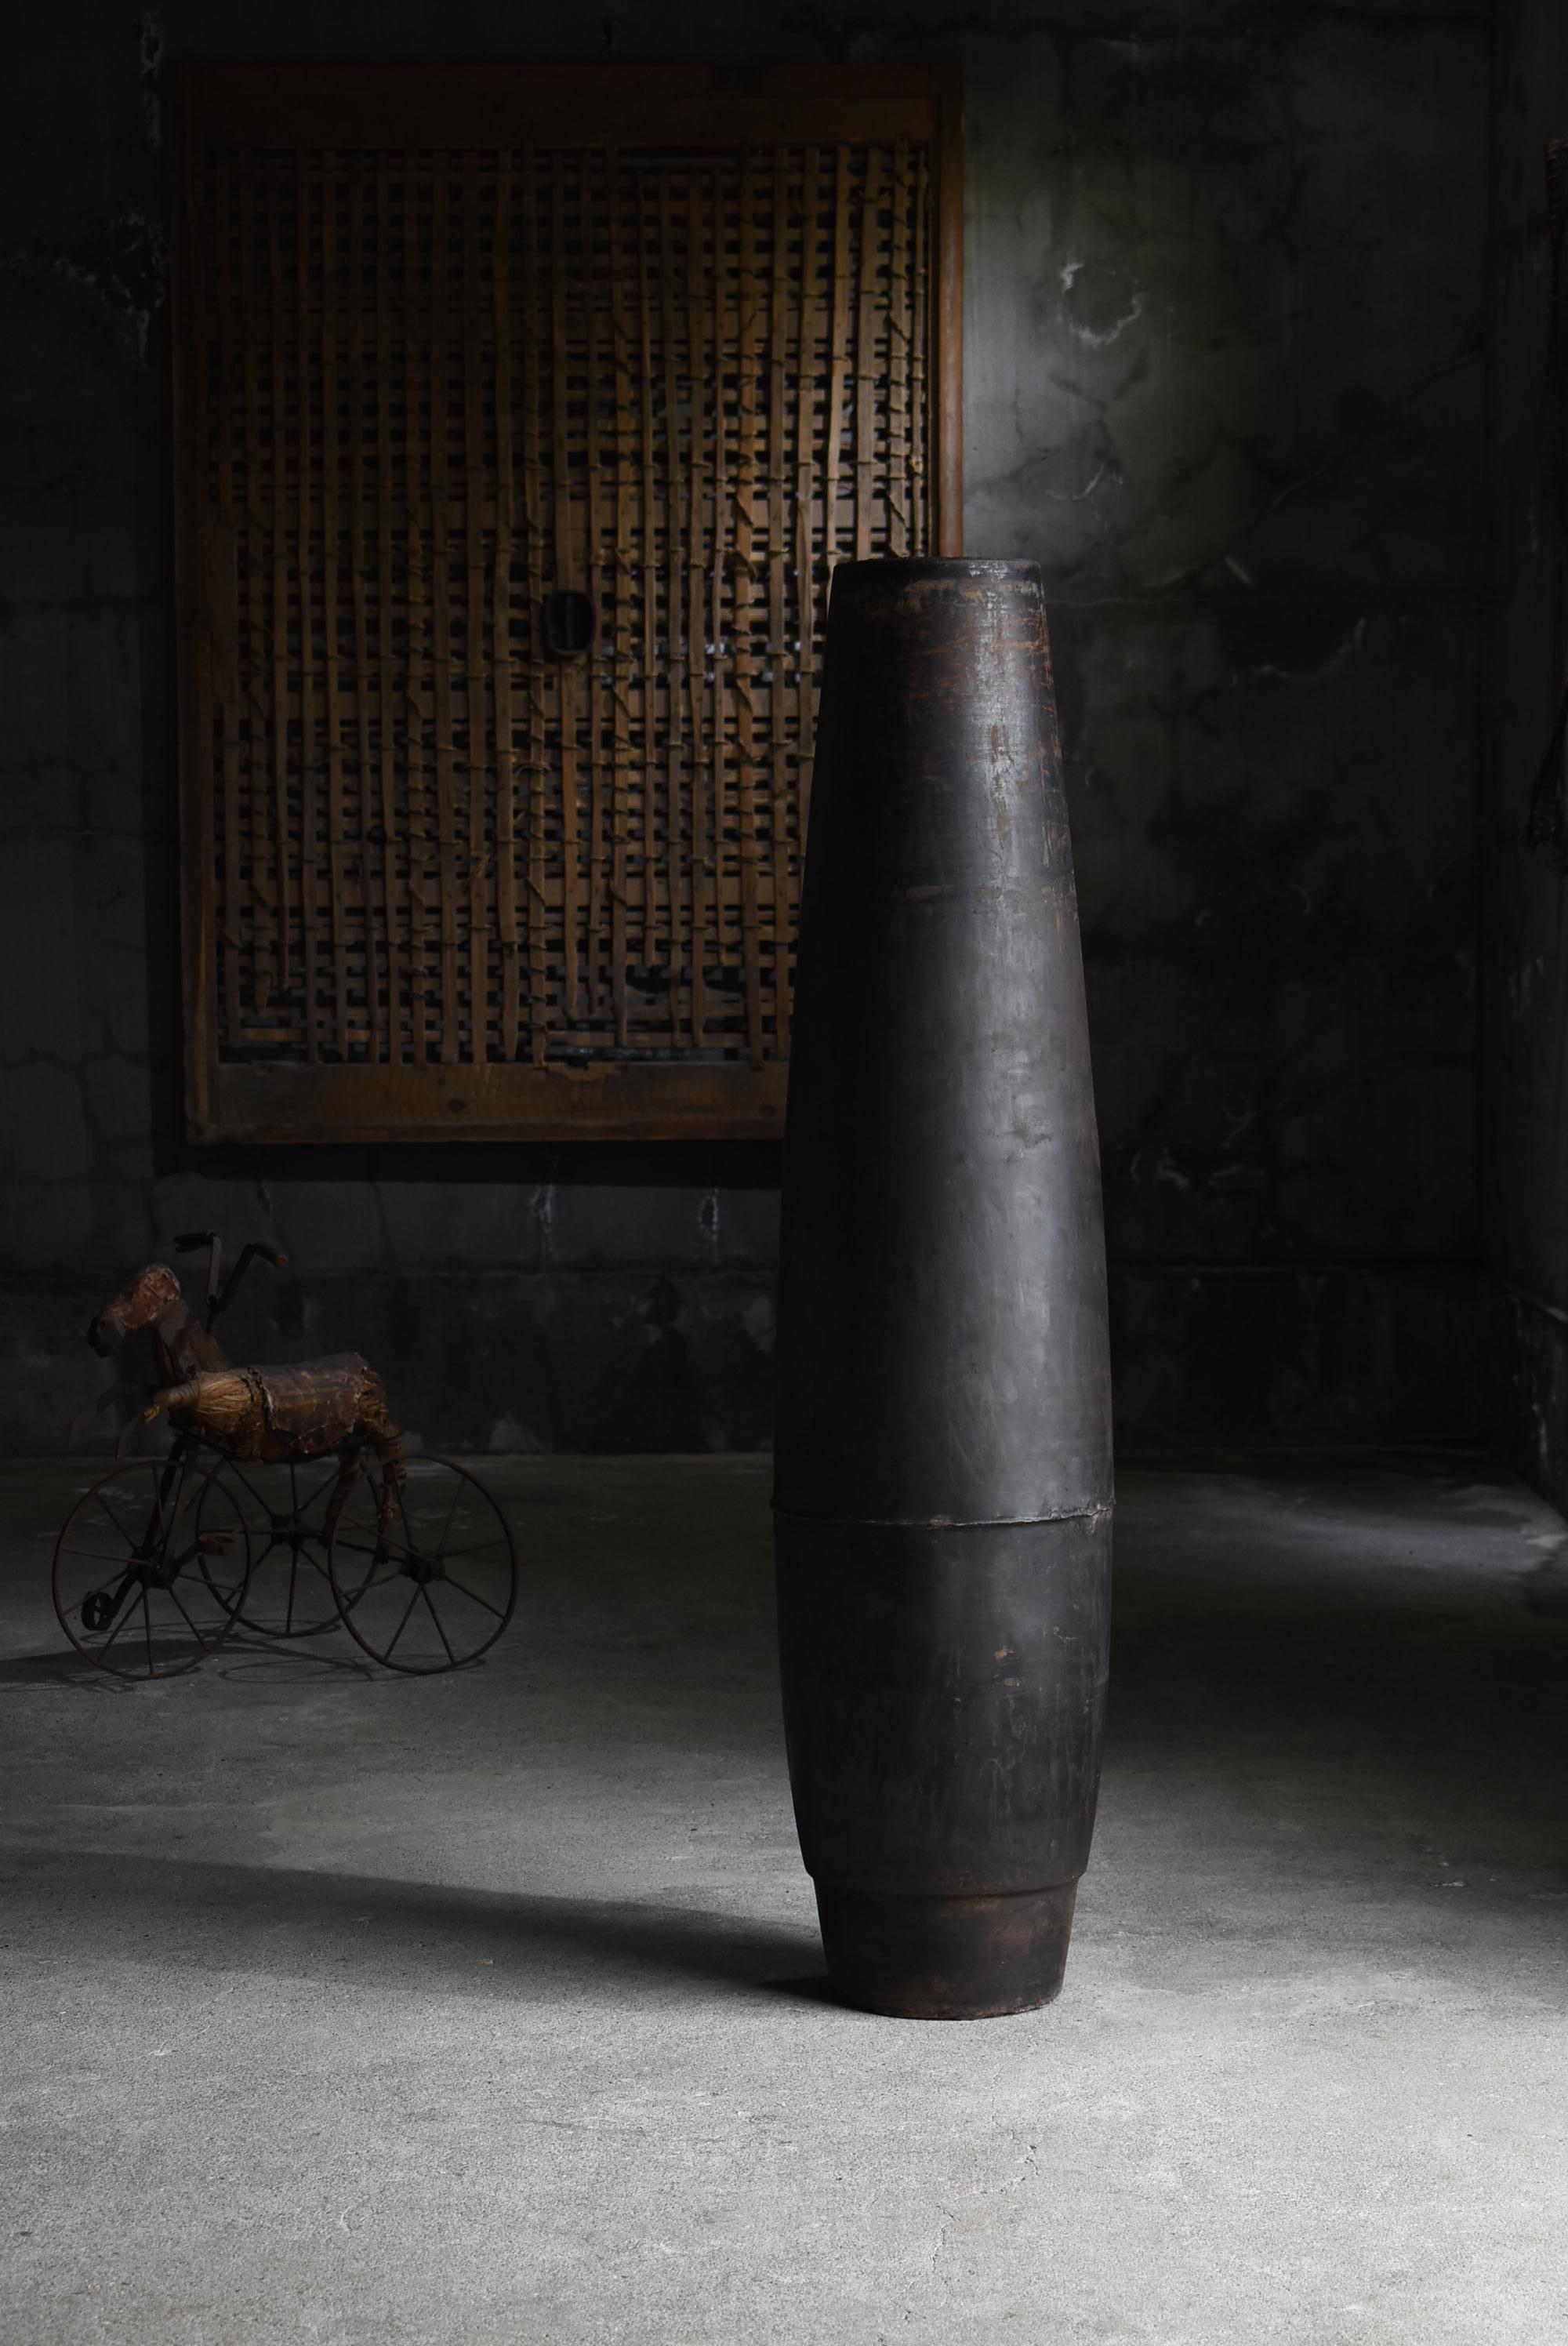 Sehr alter Eisenzylinder.
Vermutlich handelt es sich um eine Granate, die während des Krieges über Japan abgeworfen wurde.
Man geht davon aus, dass es sich um die Zeit zwischen 1900 und 1940 handelt.

Einige Zeit nach dem Abwurf wurde dieser